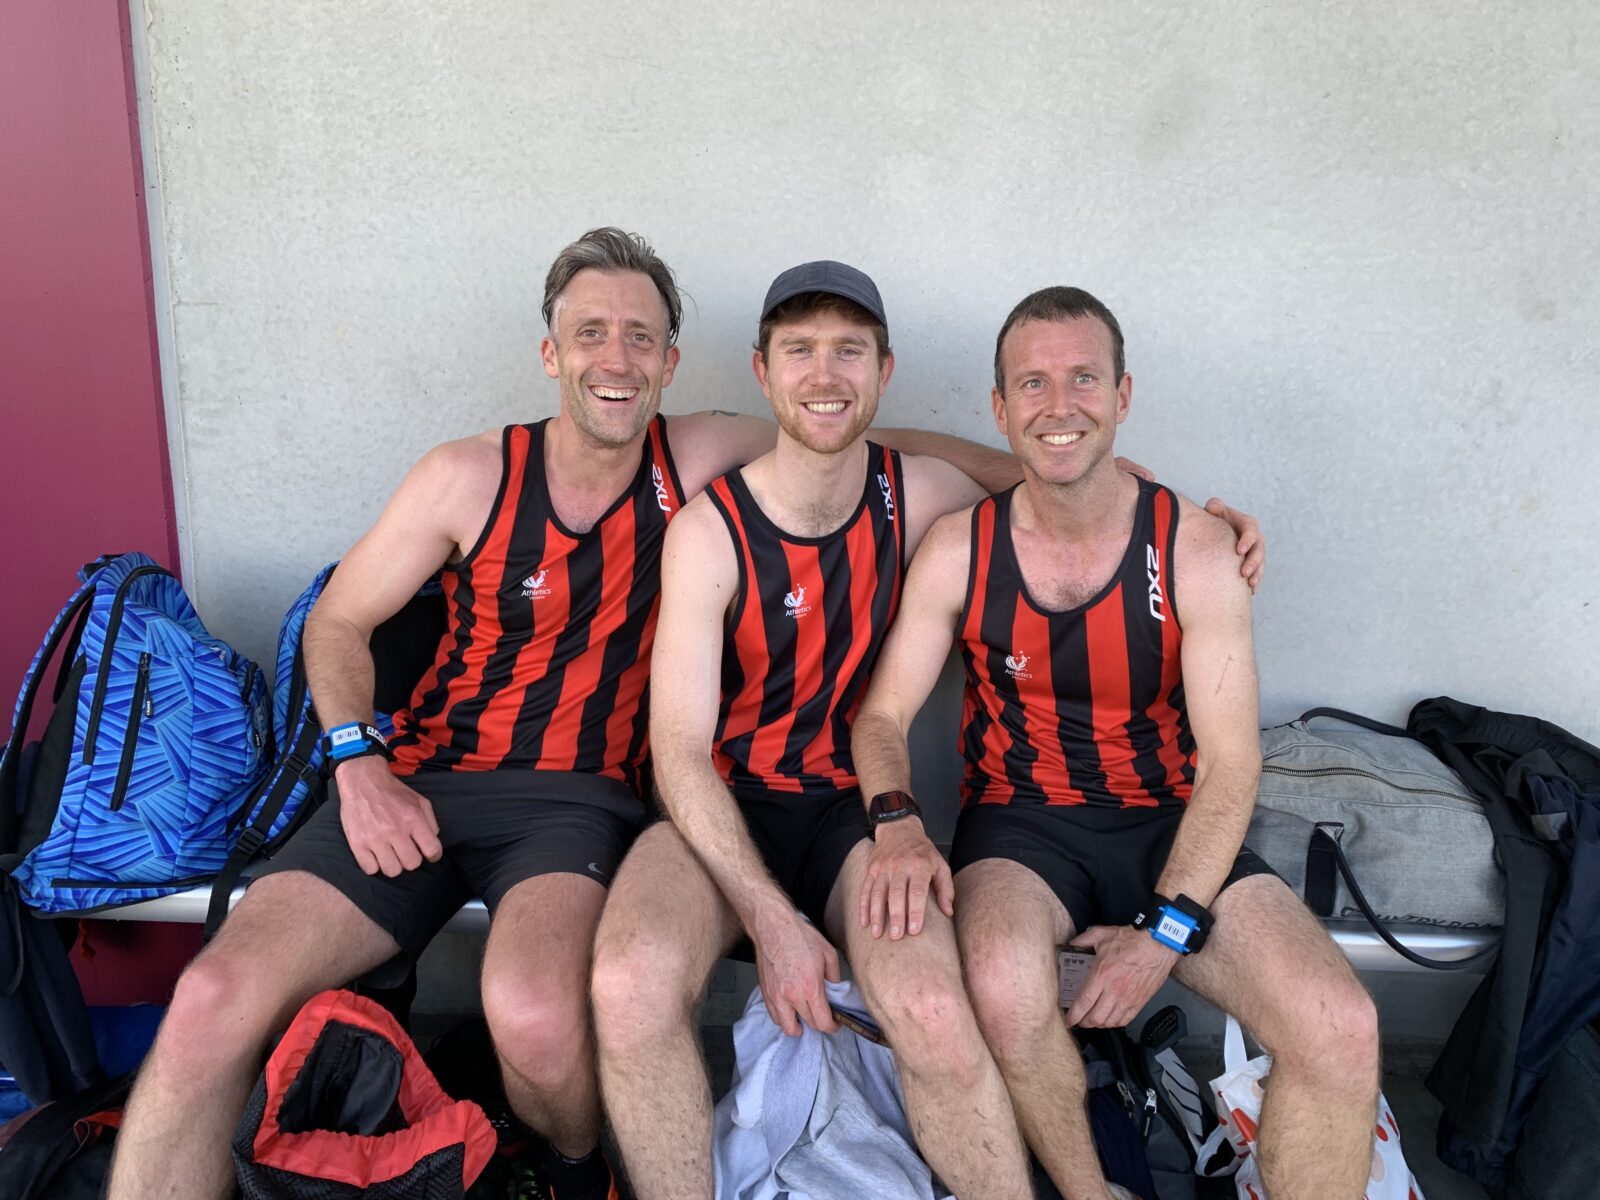 Three runners